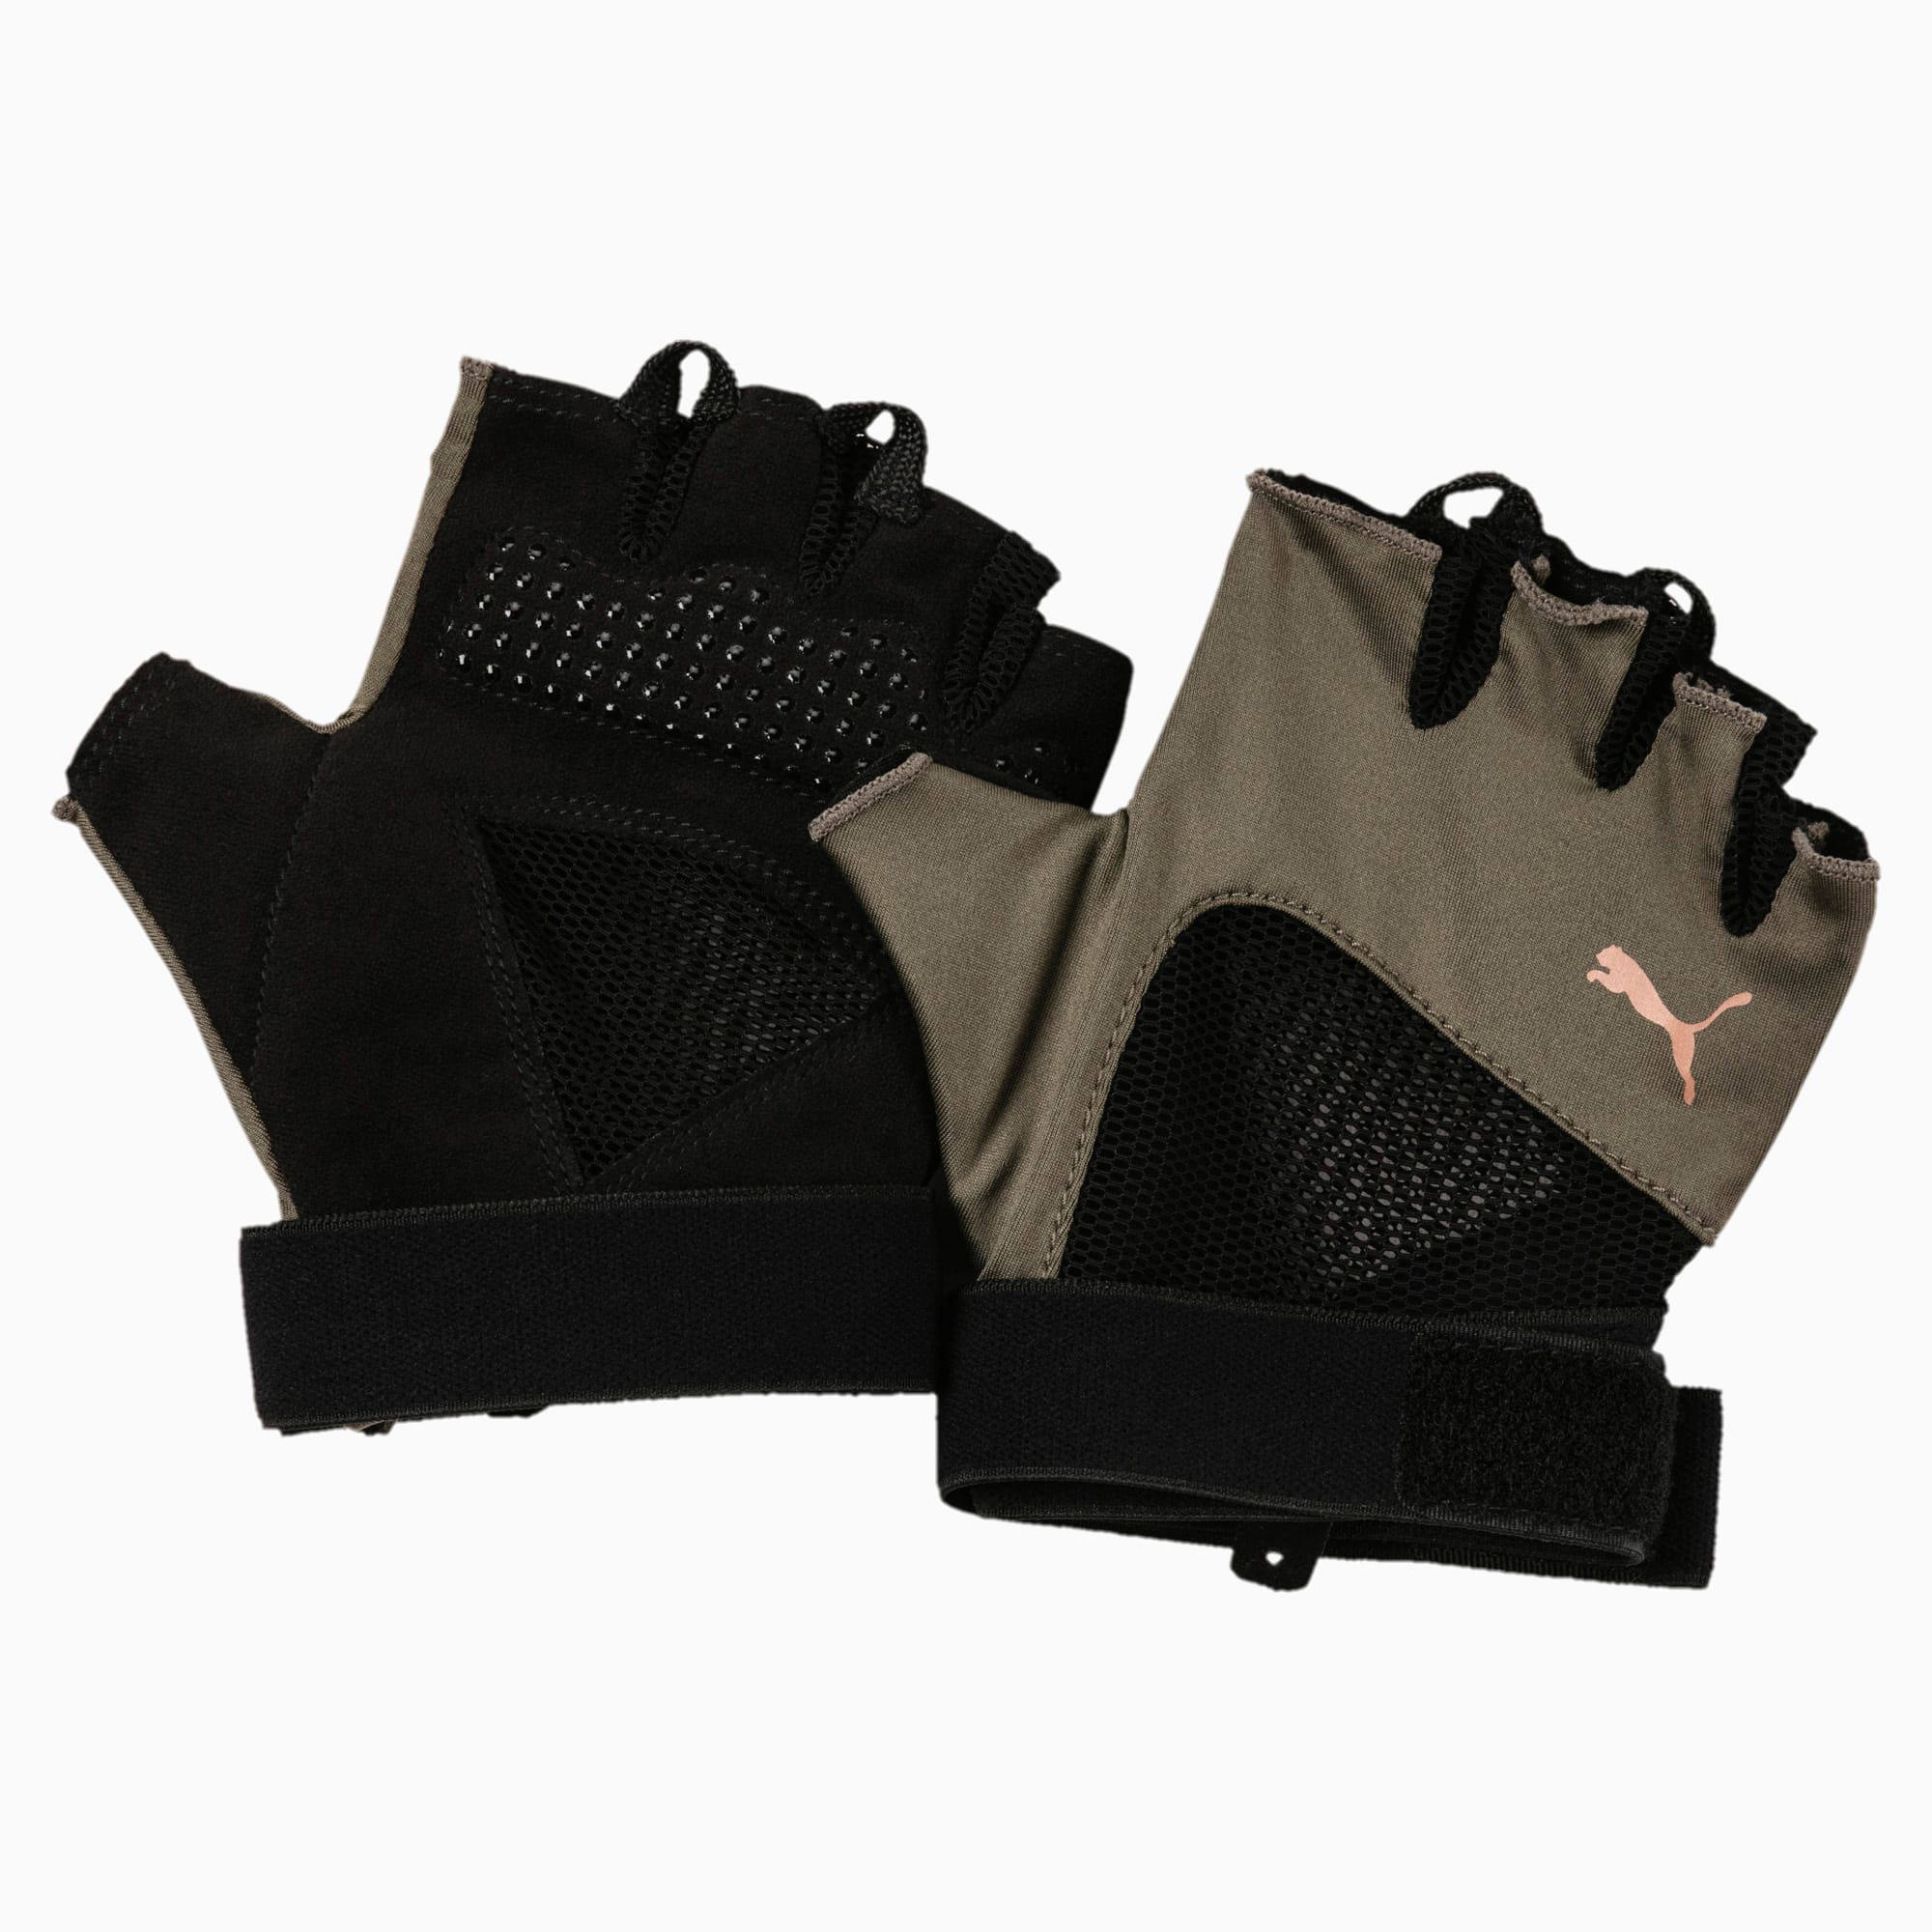 puma hand gloves for gym